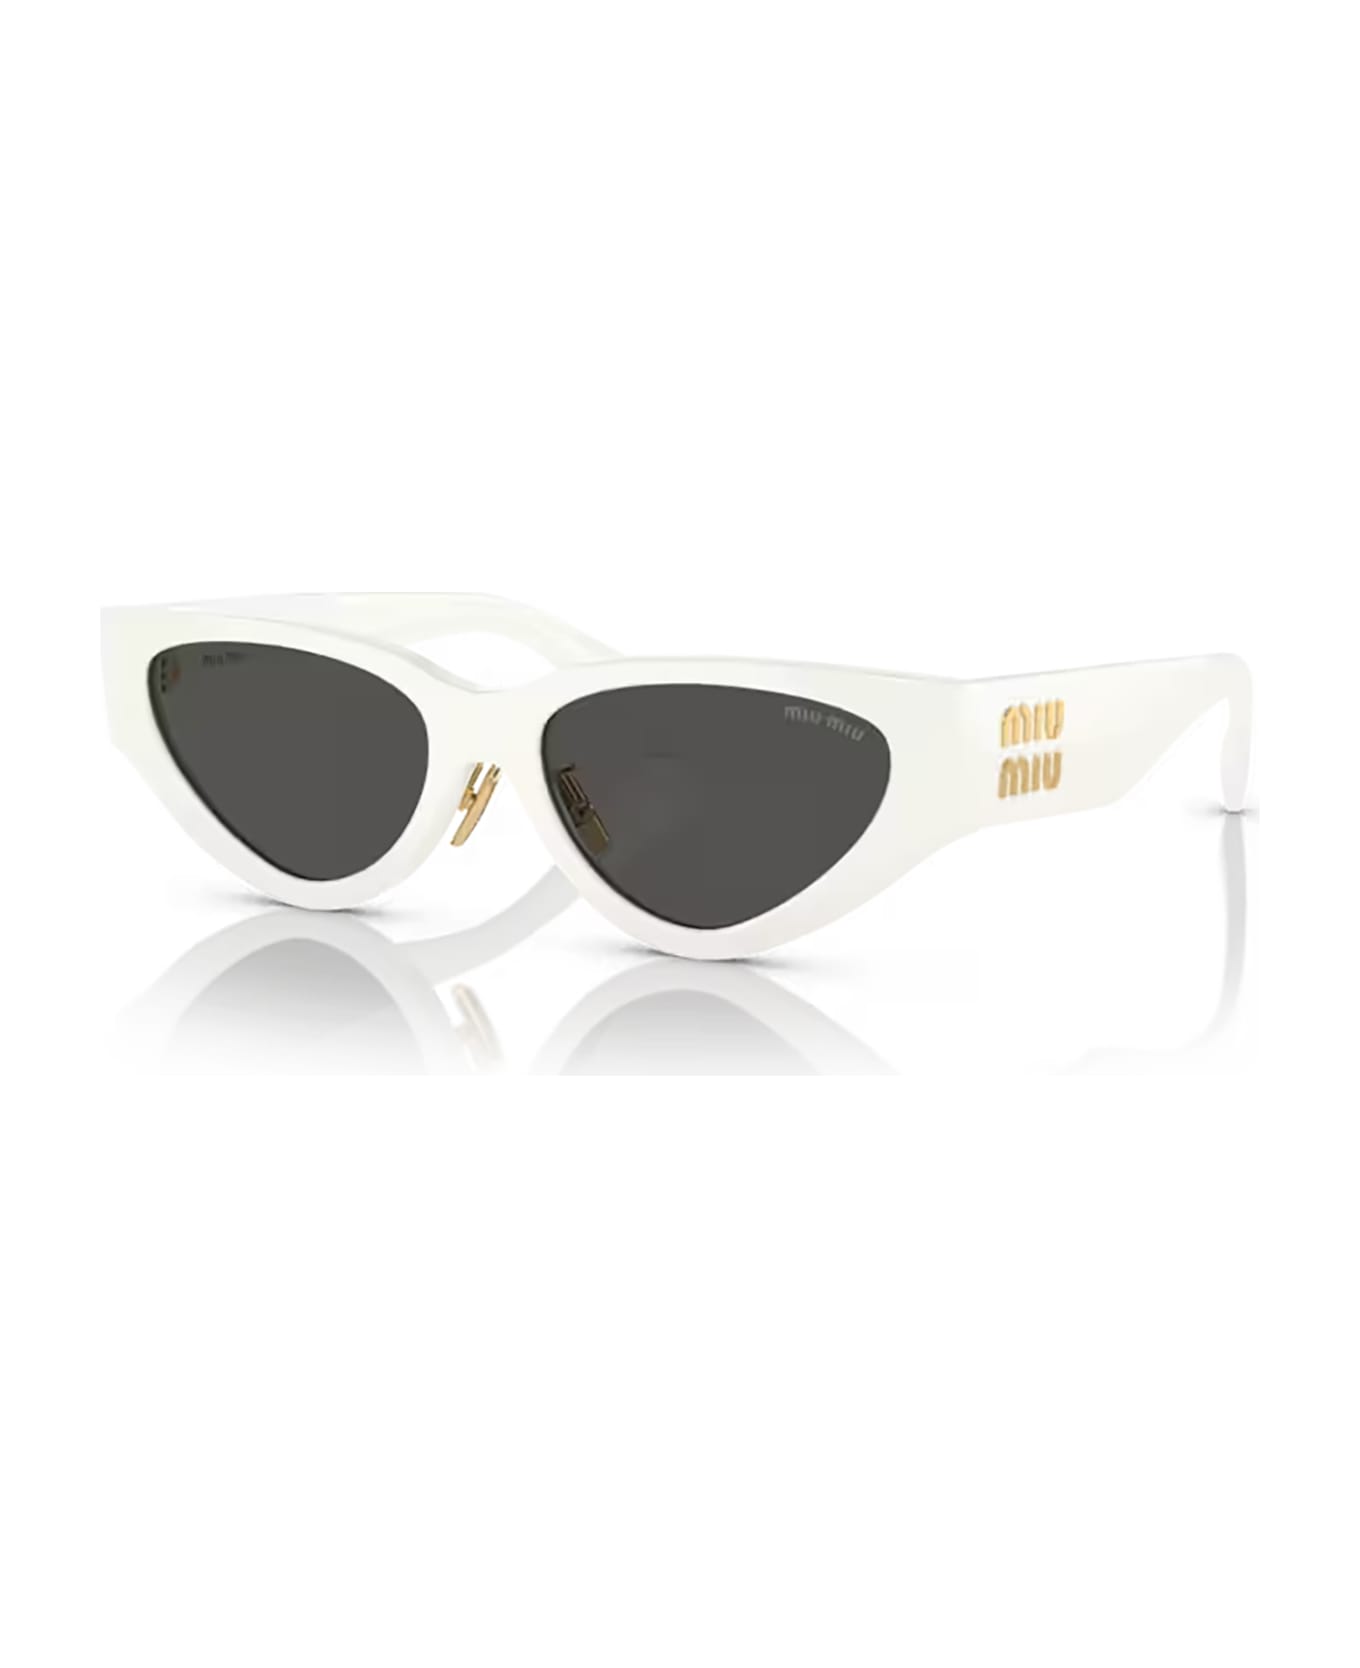 Miu Miu Eyewear Mu 03zs White Sunglasses - White